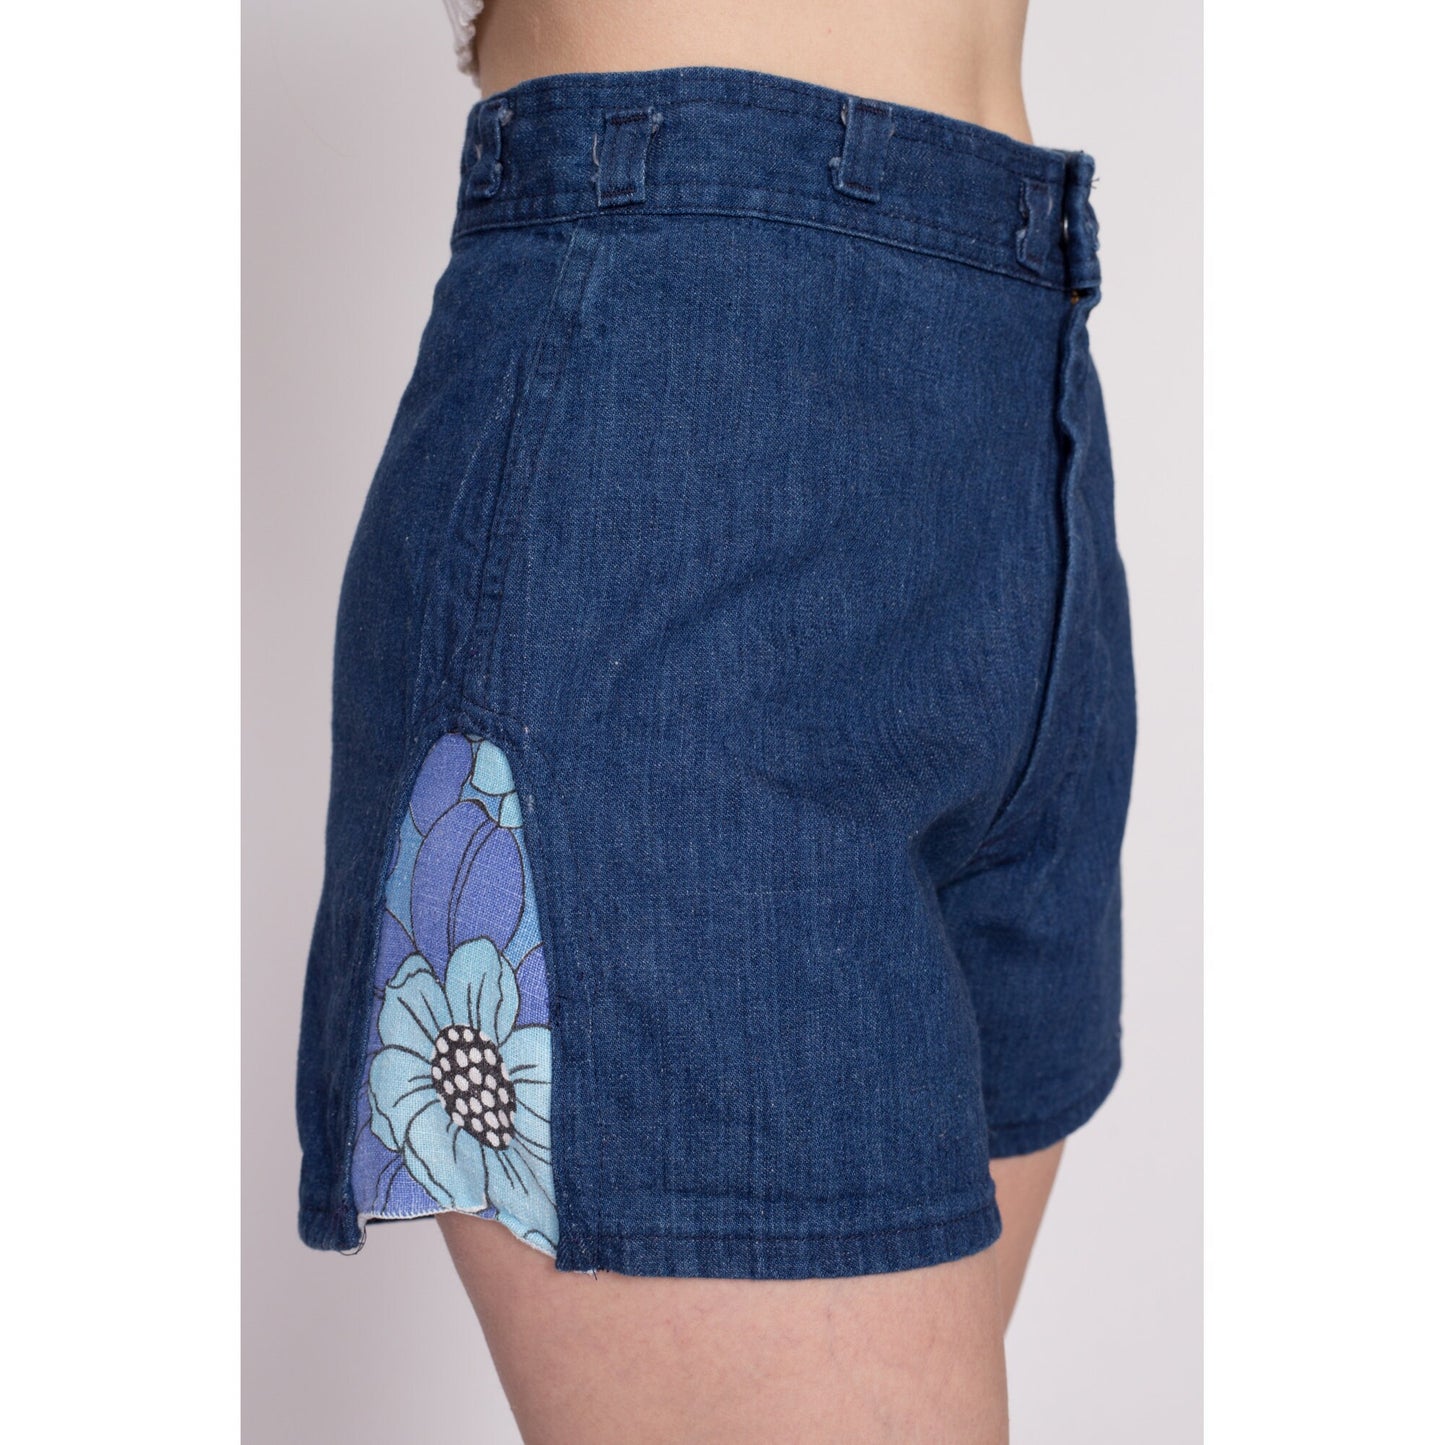 70s Denim Floral Trim Shorts - Medium, 30.5" | Vintage Dark Wash High Waisted Jean Short